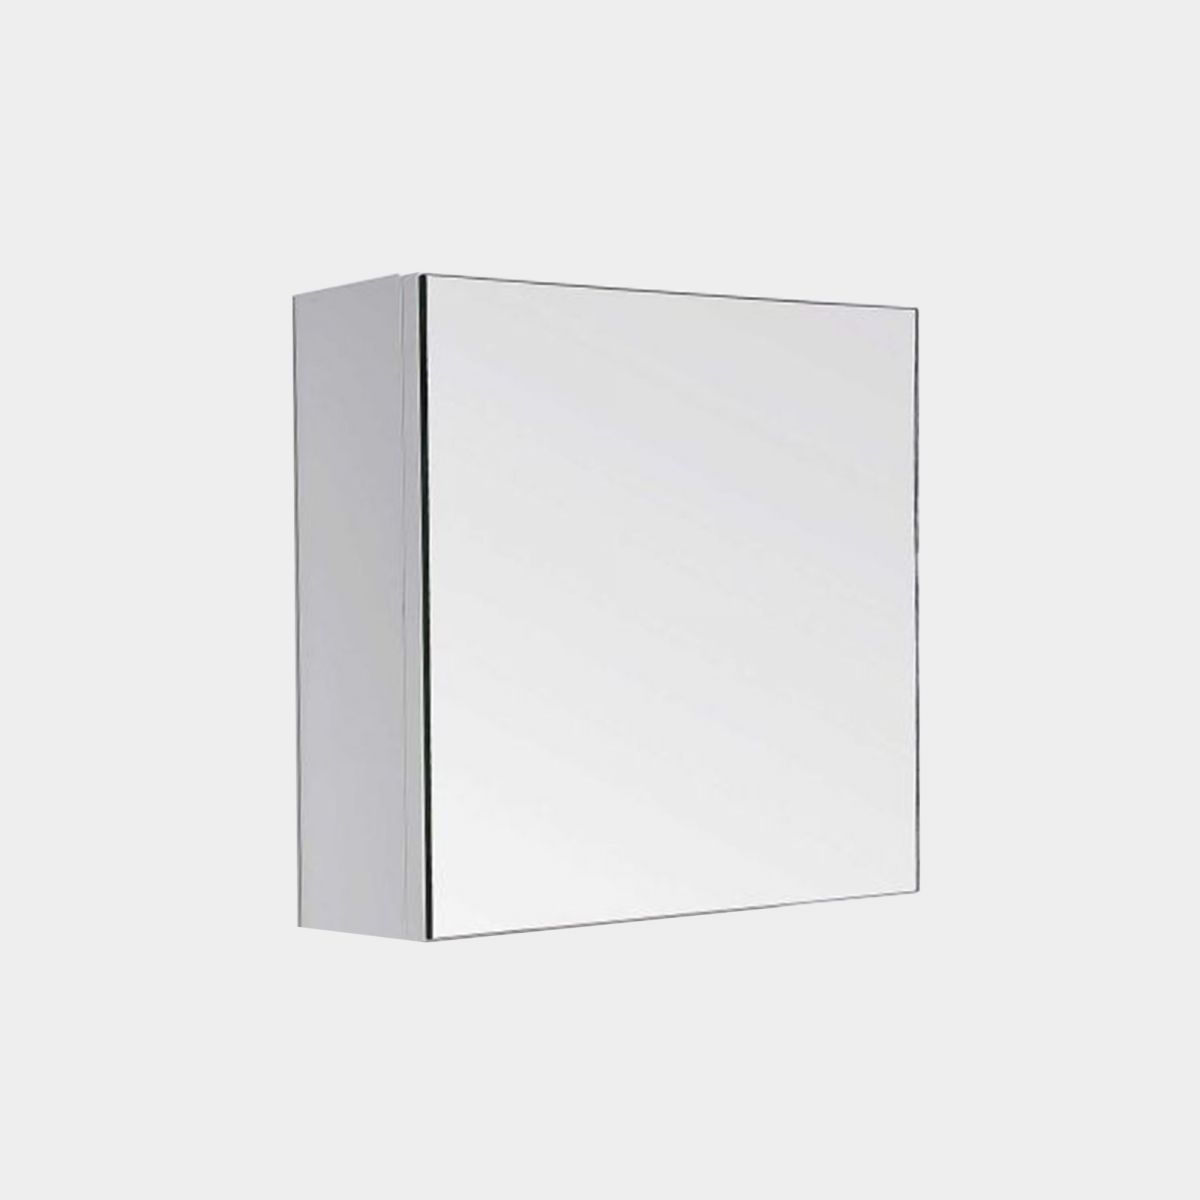 Cube Mirror Cabinet - 1 Door, 2 Shelves